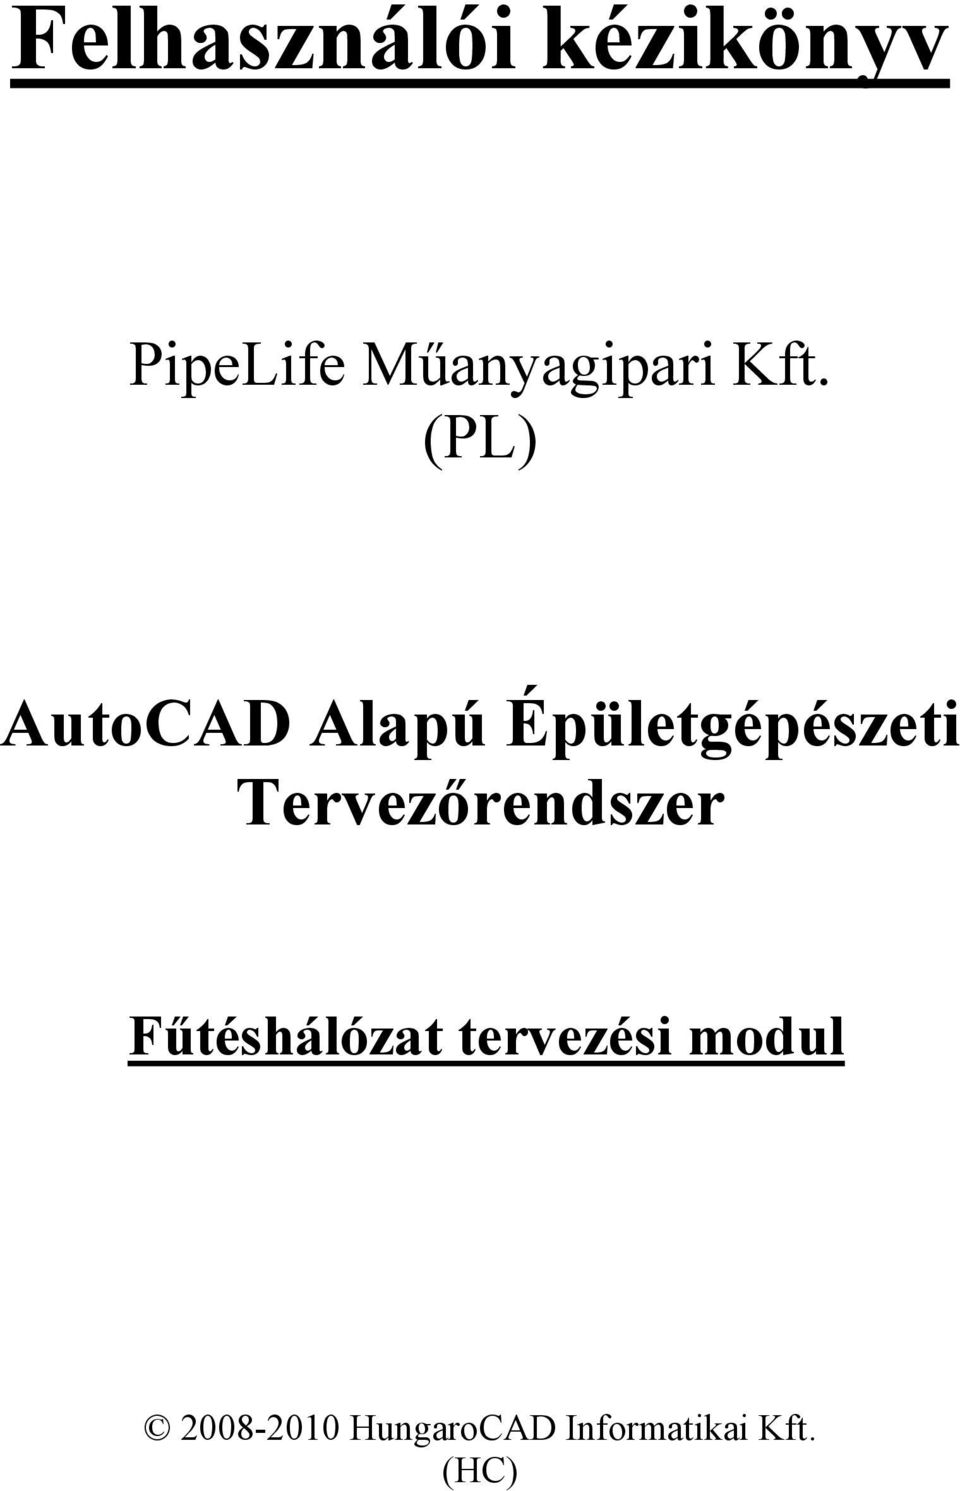 (PL) AutoCAD Alapú Épületgépészeti